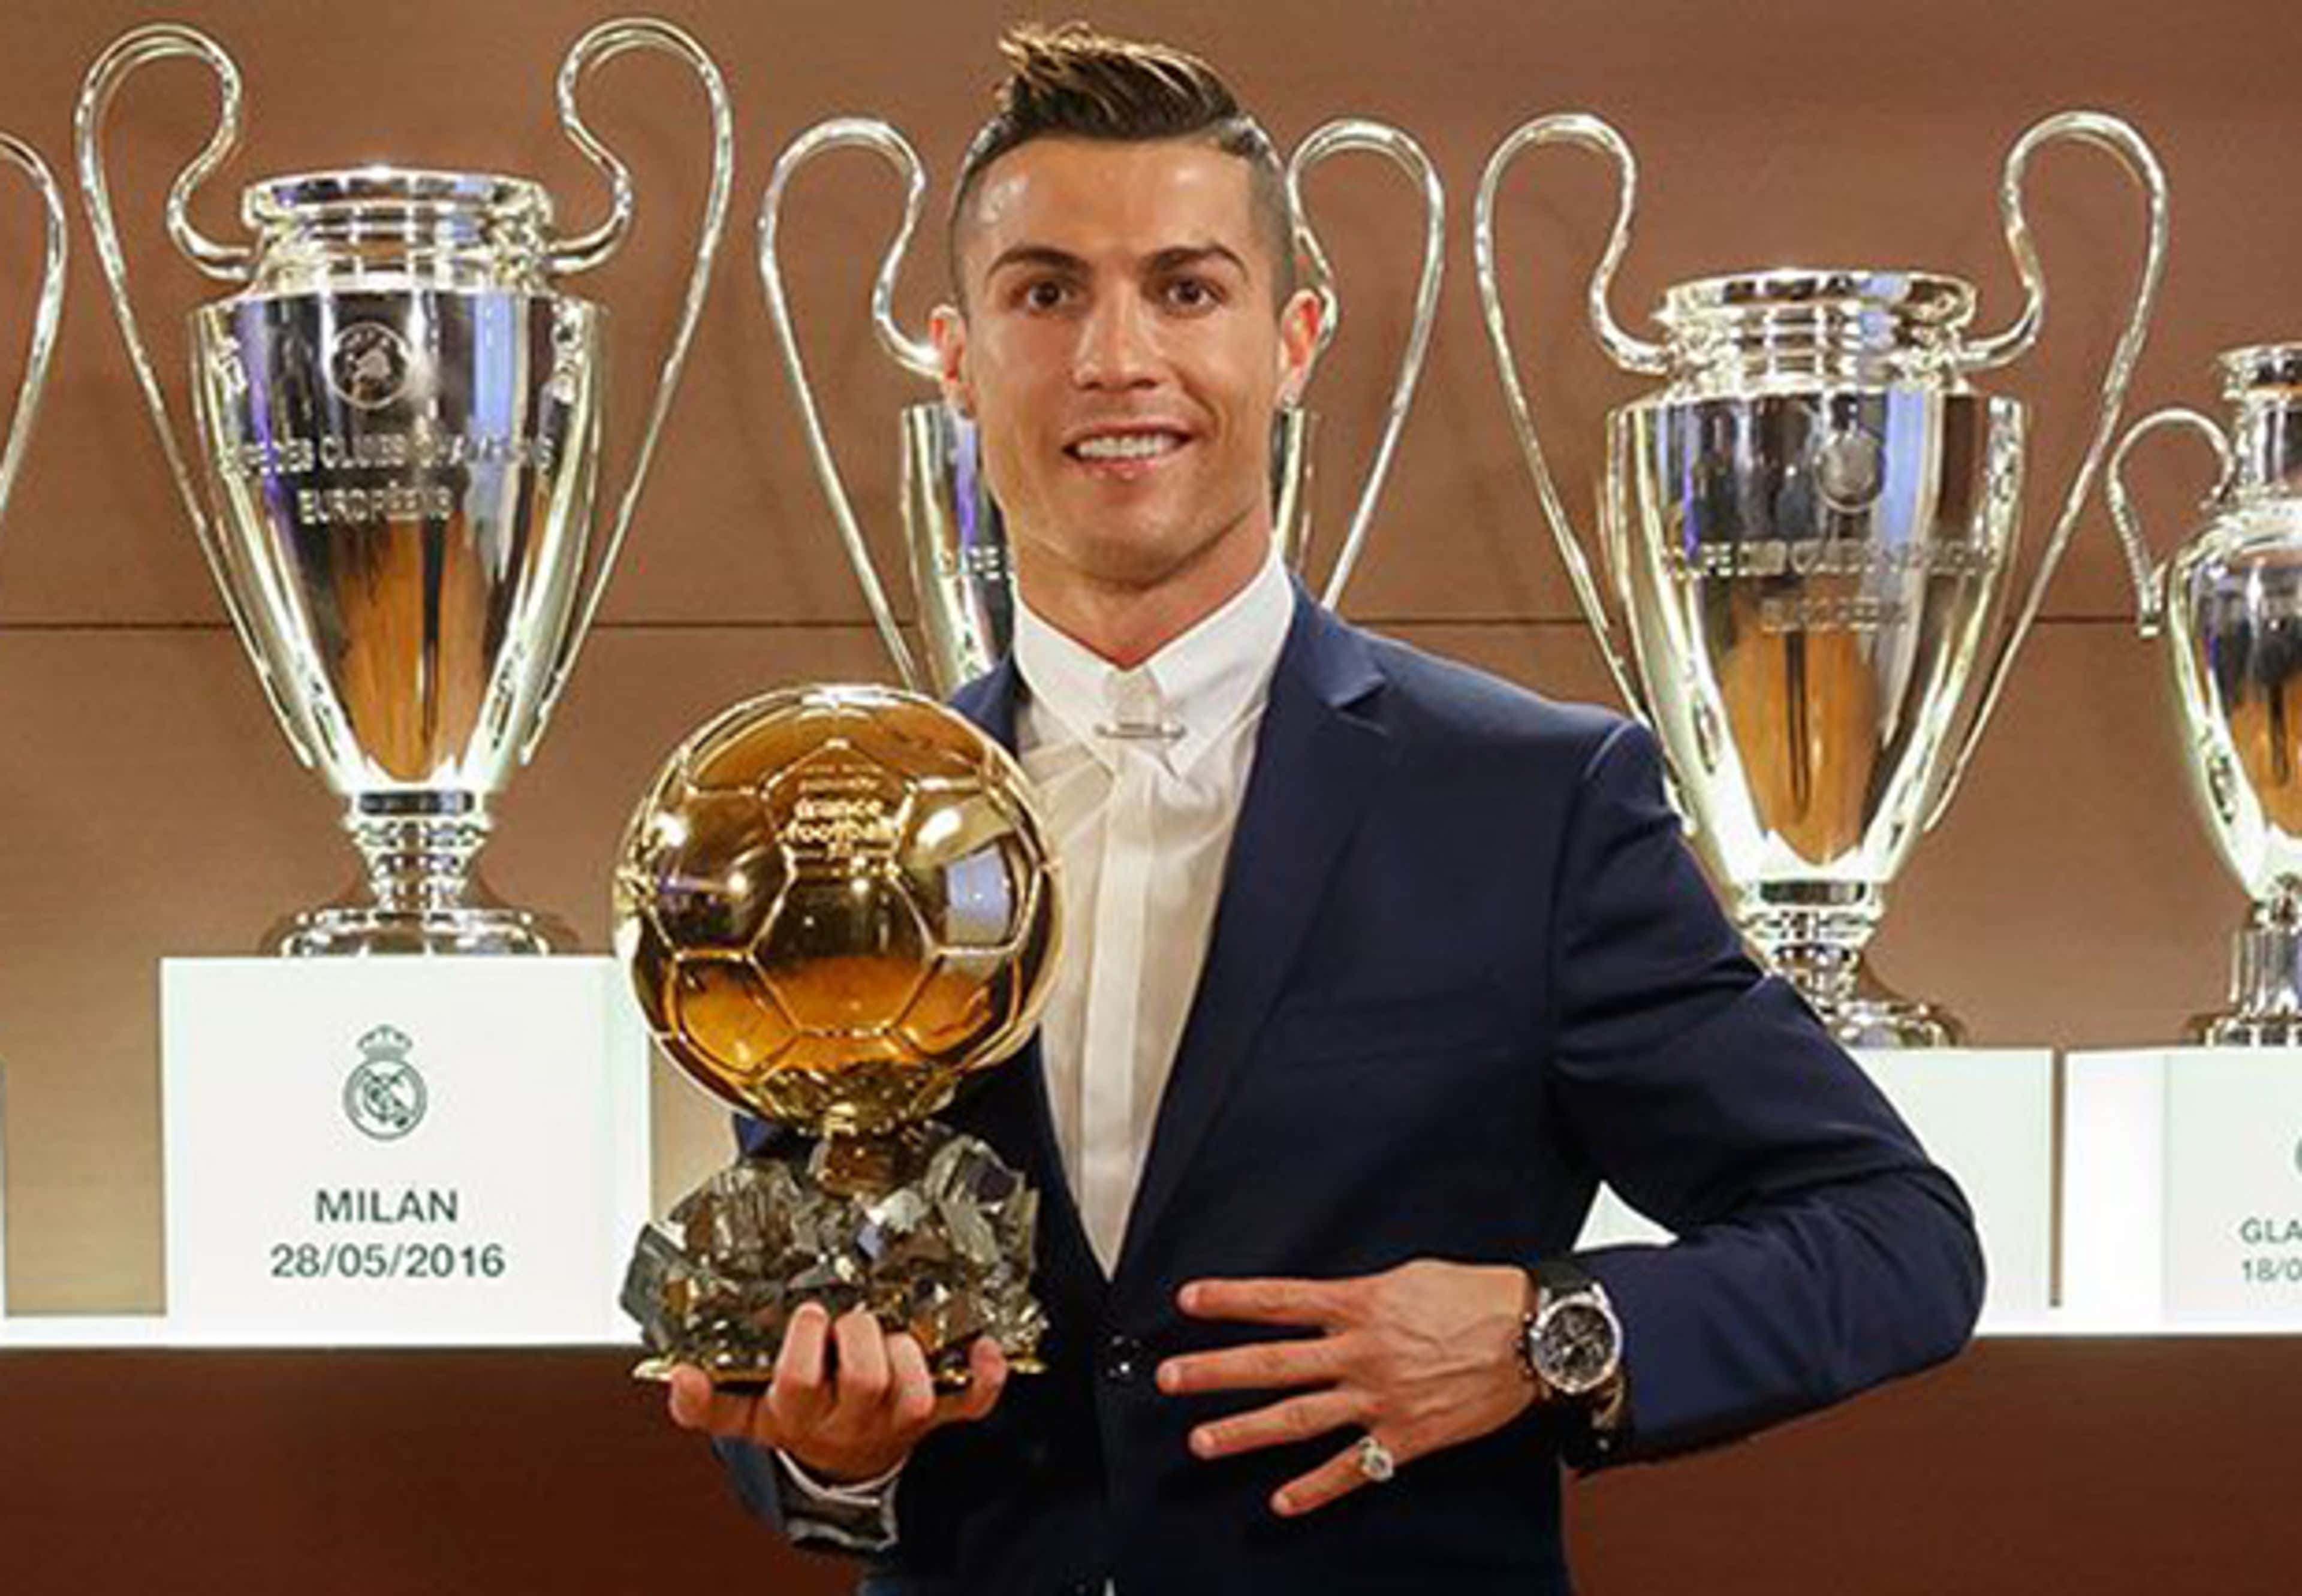 Награда 2018. Кристиано Роналдо с золотым мячом. Криштиану Роналду золотой мяч 2017. Криштиану Роналду золотой мяч 2016. Cristiano Ronaldo золотой мяч.